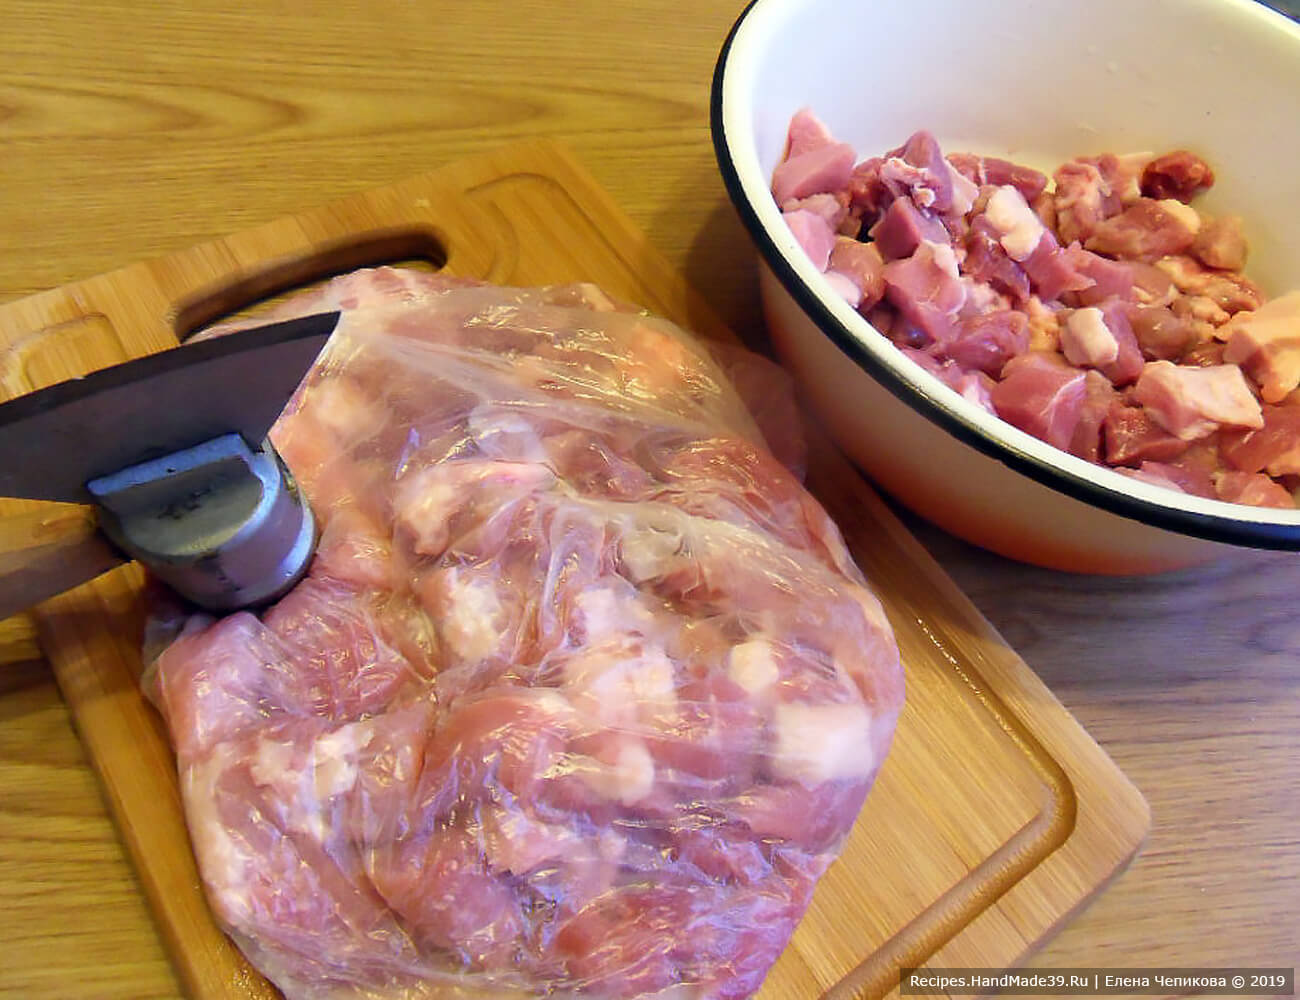 Мясо нарезать небольшими кусочками, сложить в целлофановый пакет и отбить молотком с двух сторон. Посолить, поперчить